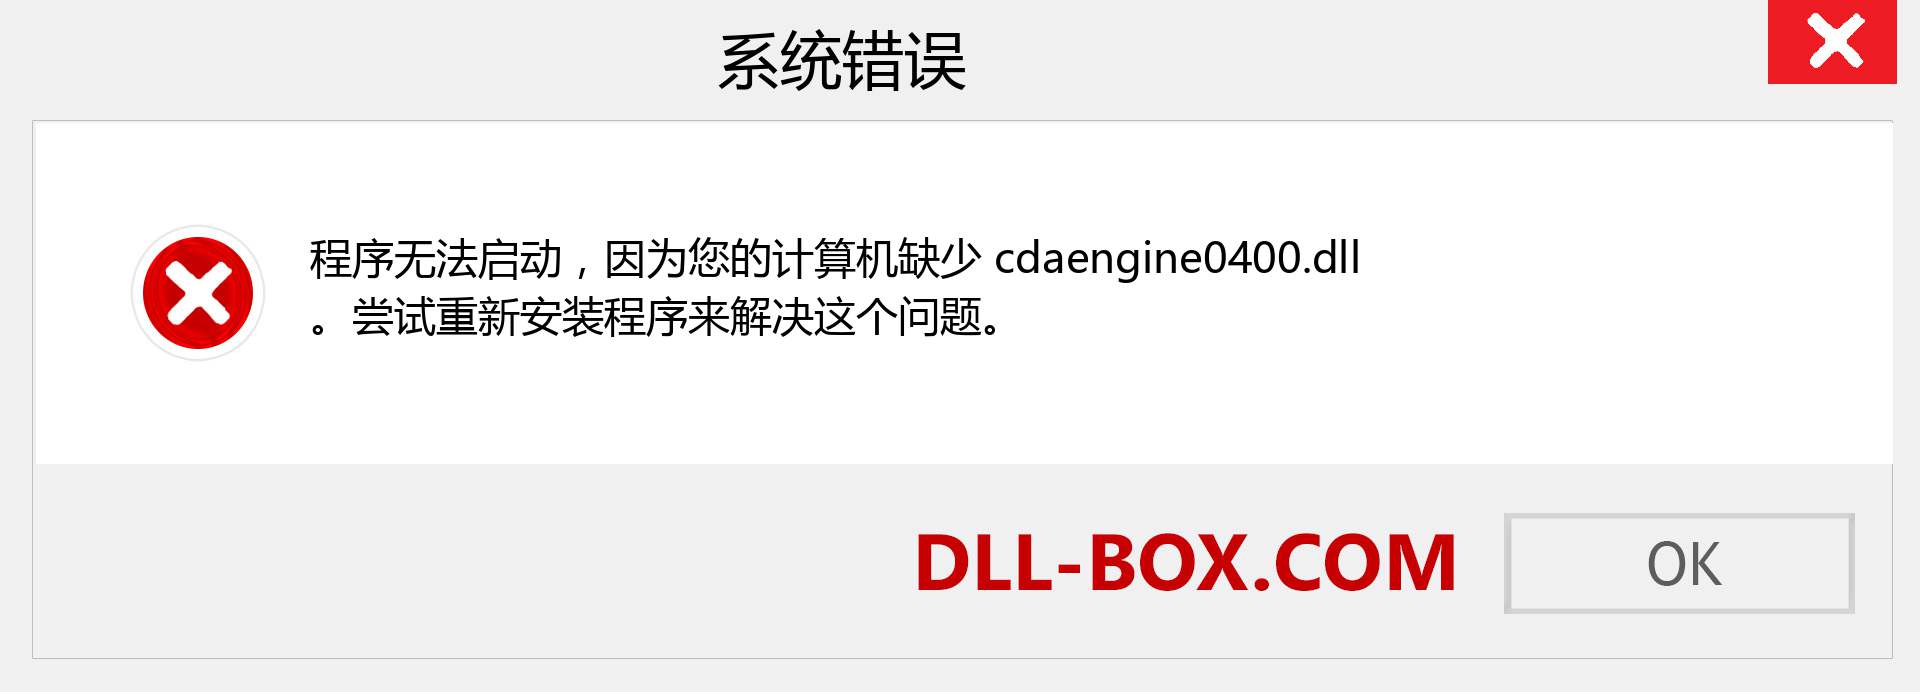 cdaengine0400.dll 文件丢失？。 适用于 Windows 7、8、10 的下载 - 修复 Windows、照片、图像上的 cdaengine0400 dll 丢失错误